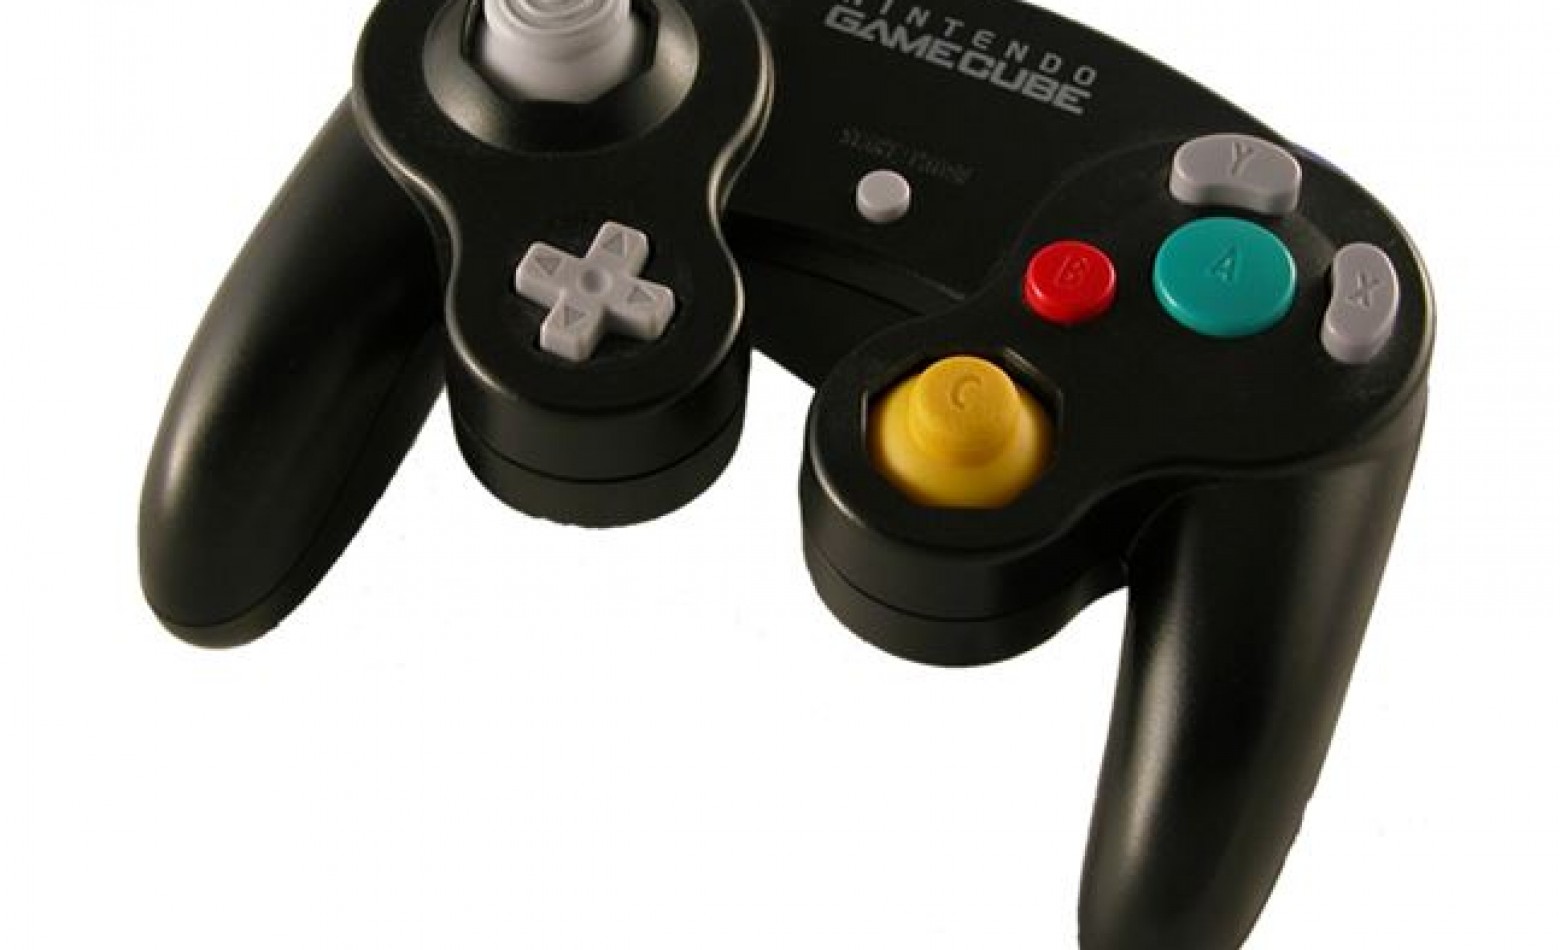 Marca vai lançar réplica do controle do GameCube para o Wii U